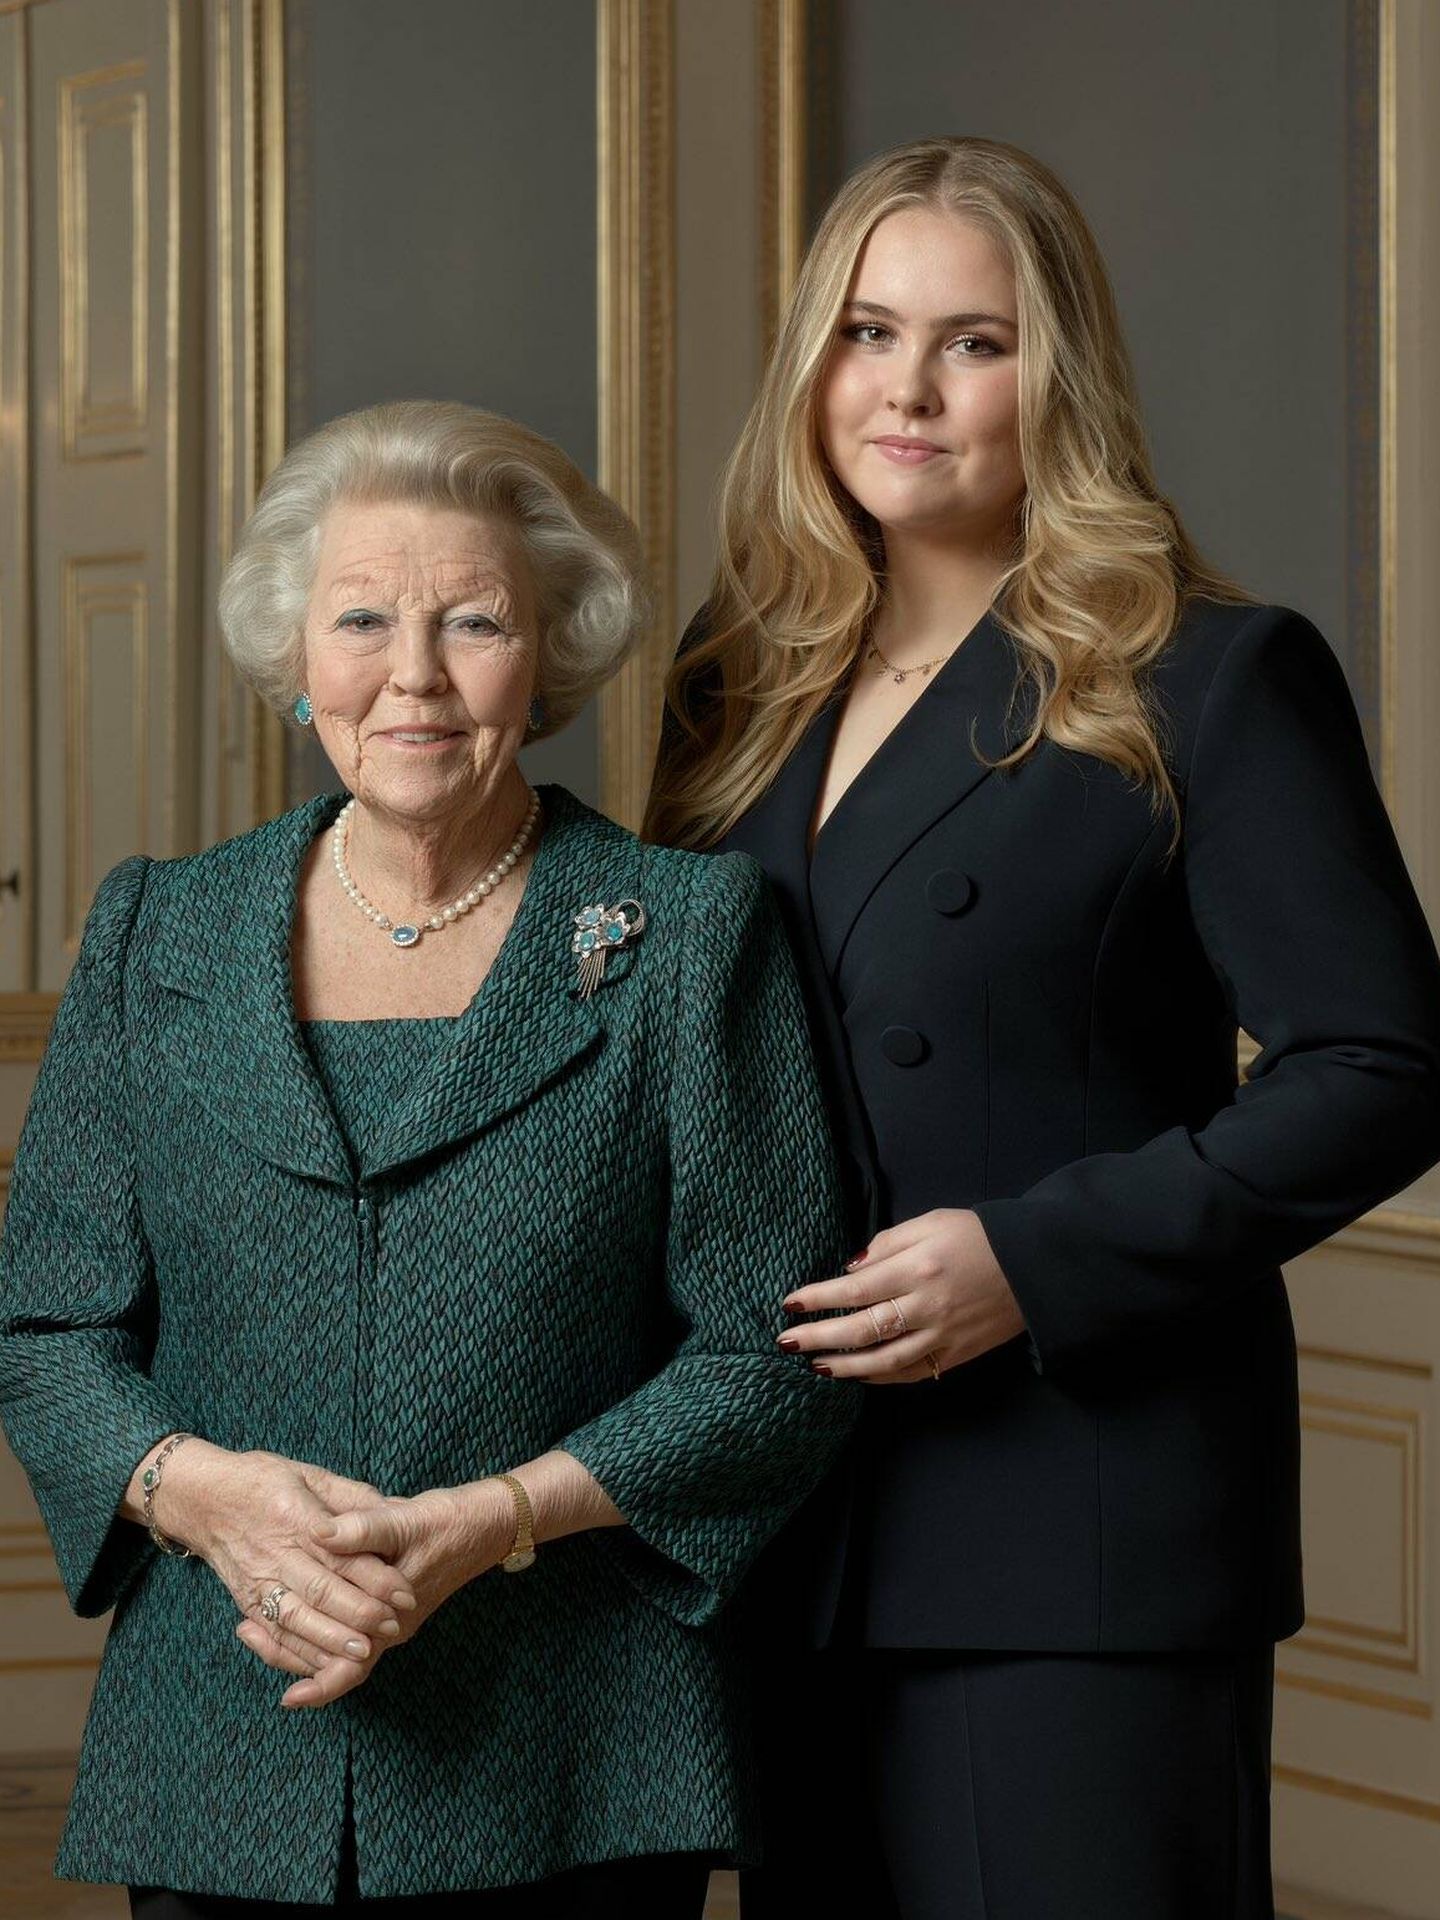 La princesa Amalia con su abuela, quien fuera la reina Beatriz. (Casa Real de Holanda)